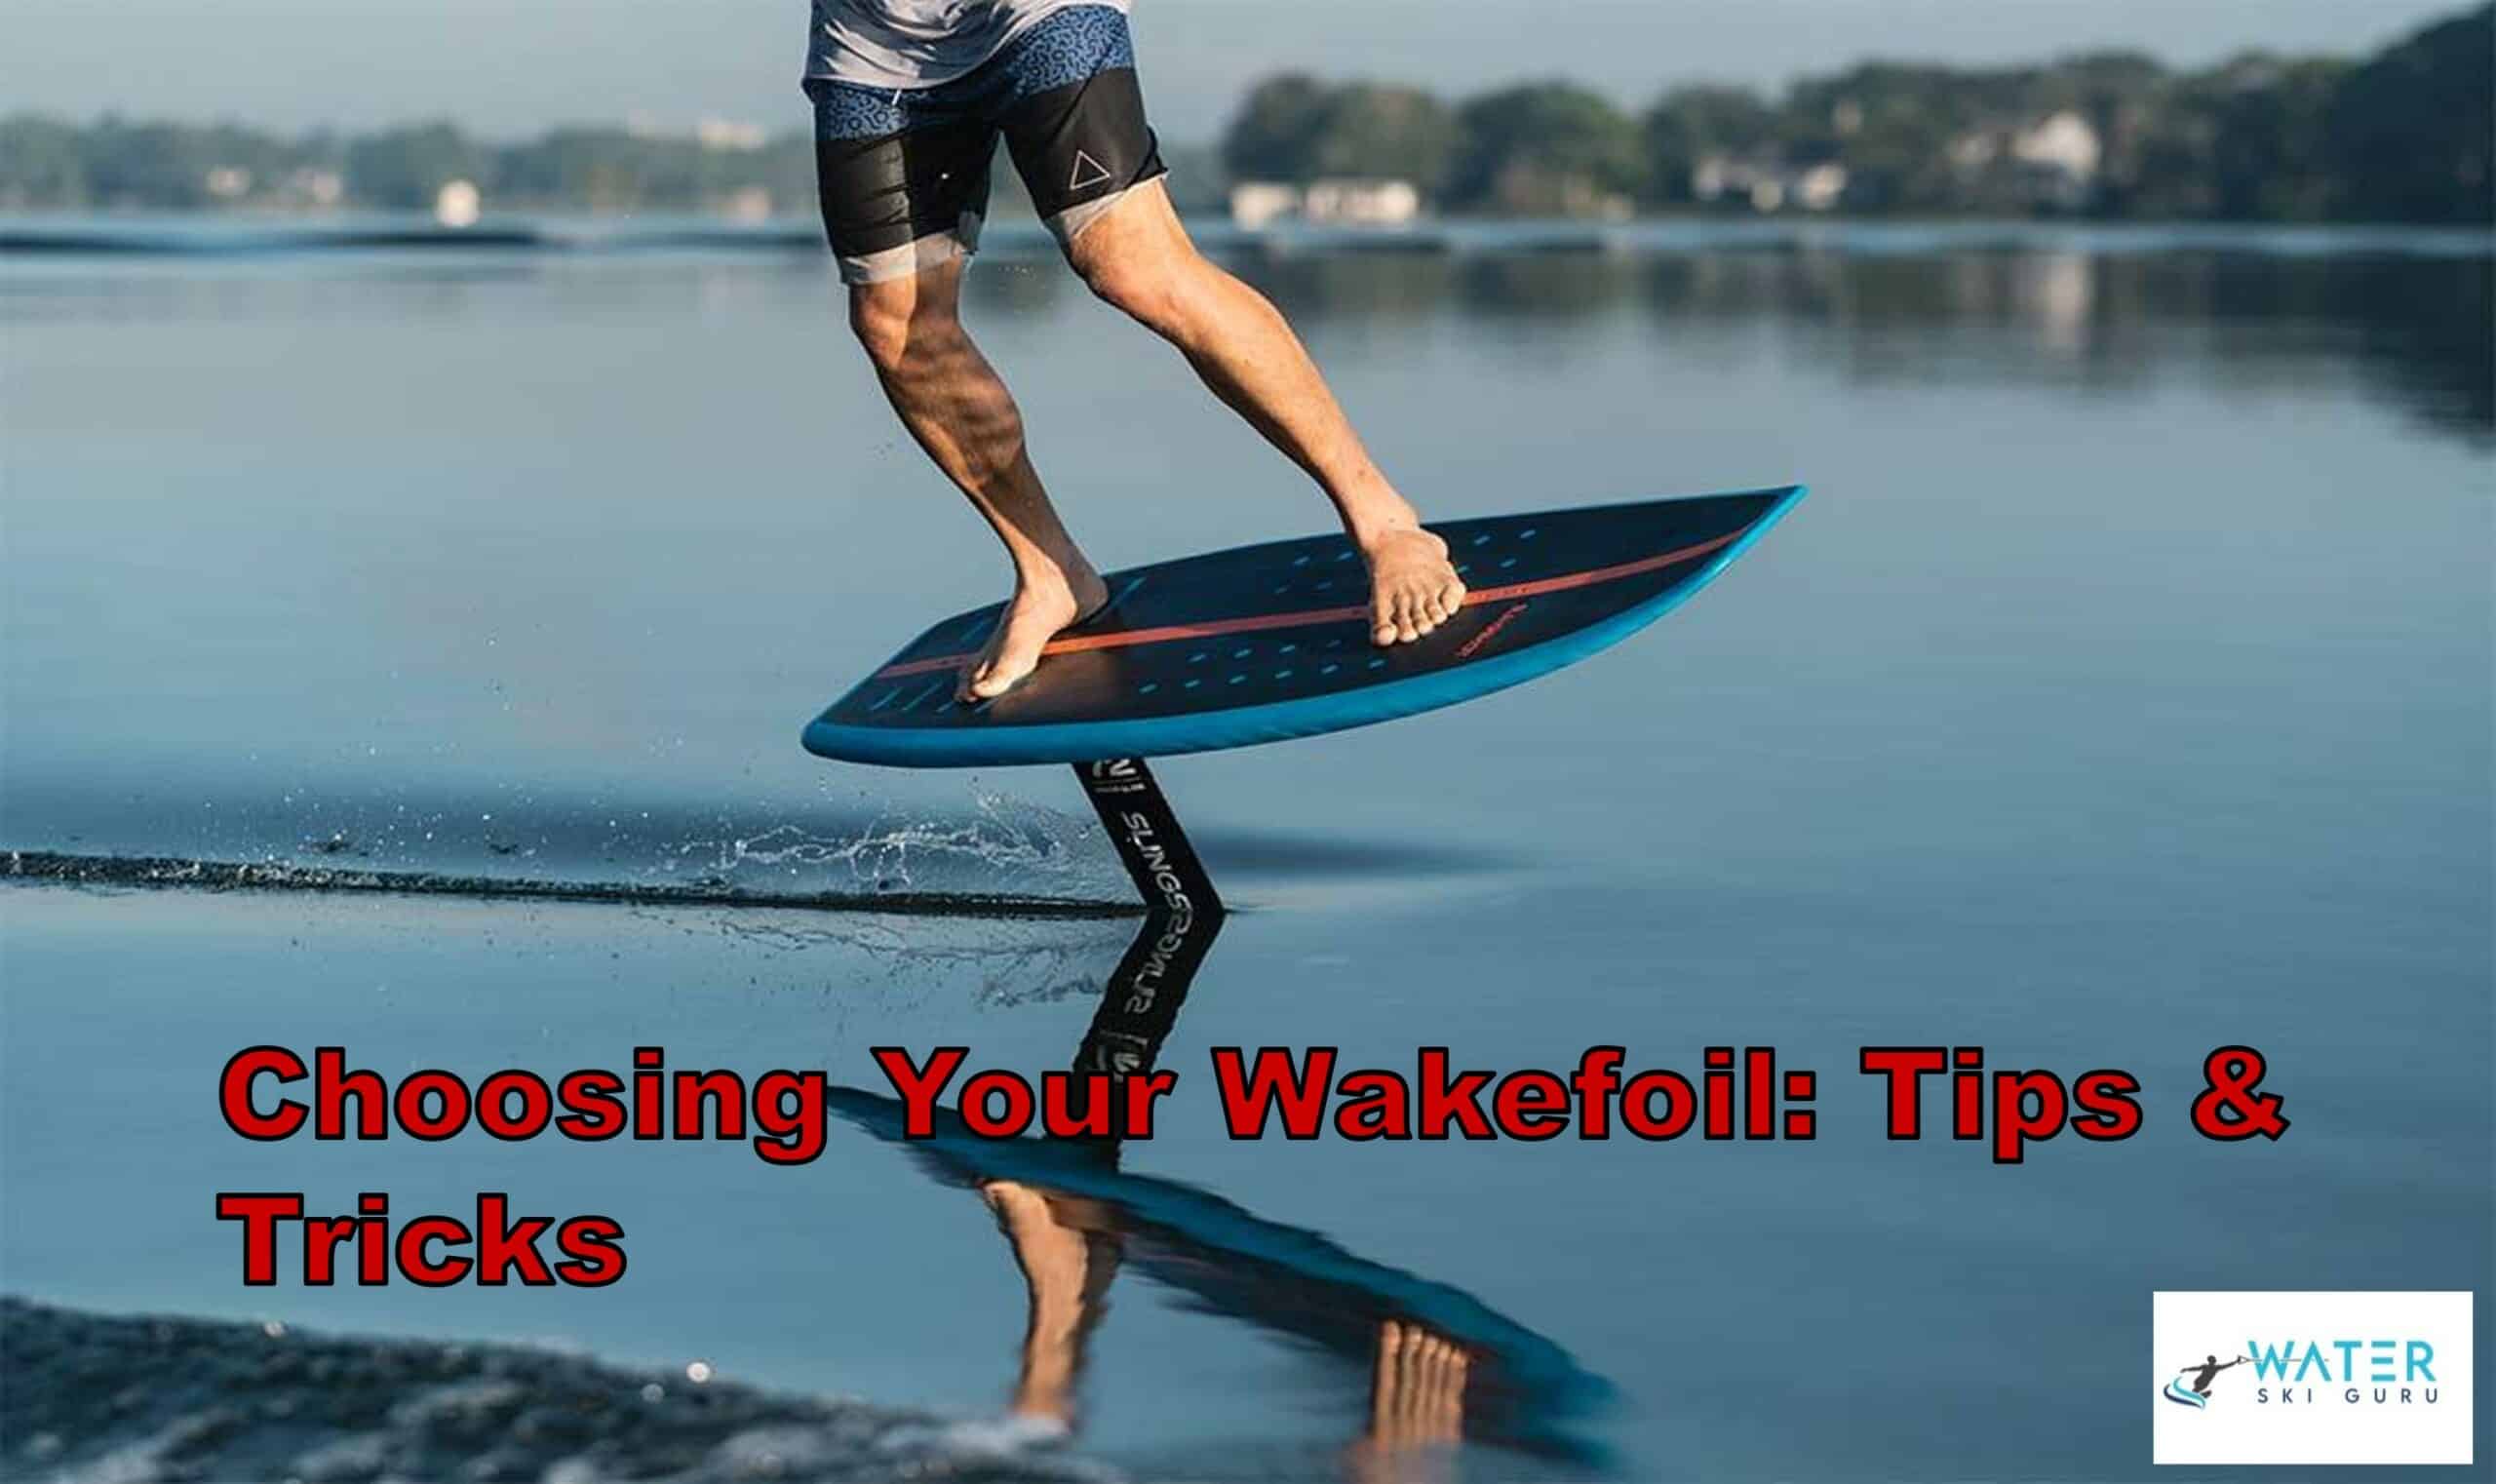 Choosing Your Wakefoil: Tips & Tricks